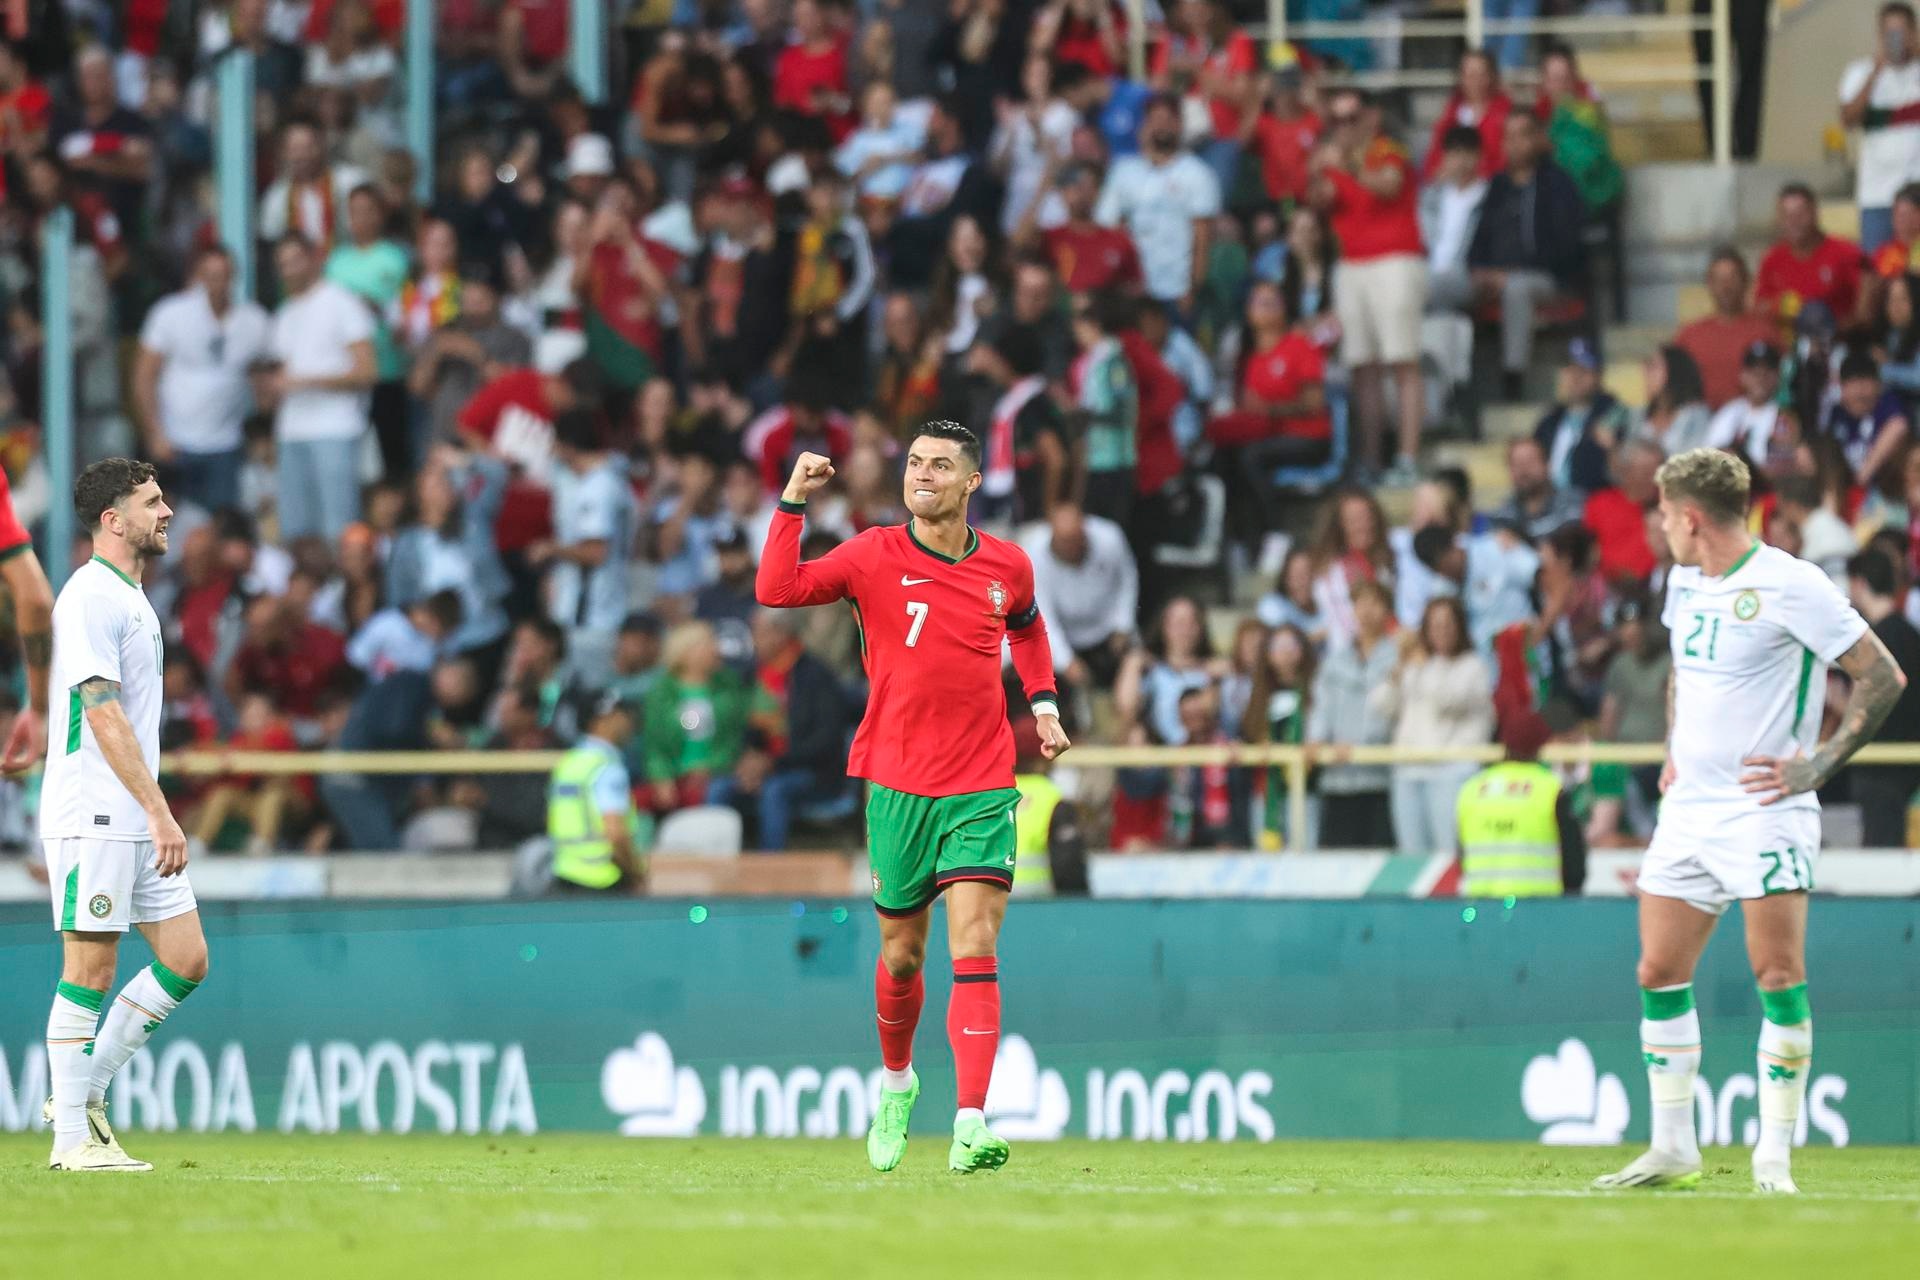 Portugal certificó la victoria en su último test de preparación para la Eurocopa ante Irlanda (3-0). Sin duda, el gran protagonista fue Cristiano Ronaldo, con un doblete, y un balón estrellado en el palo. Joao Félix inauguró el marcador.